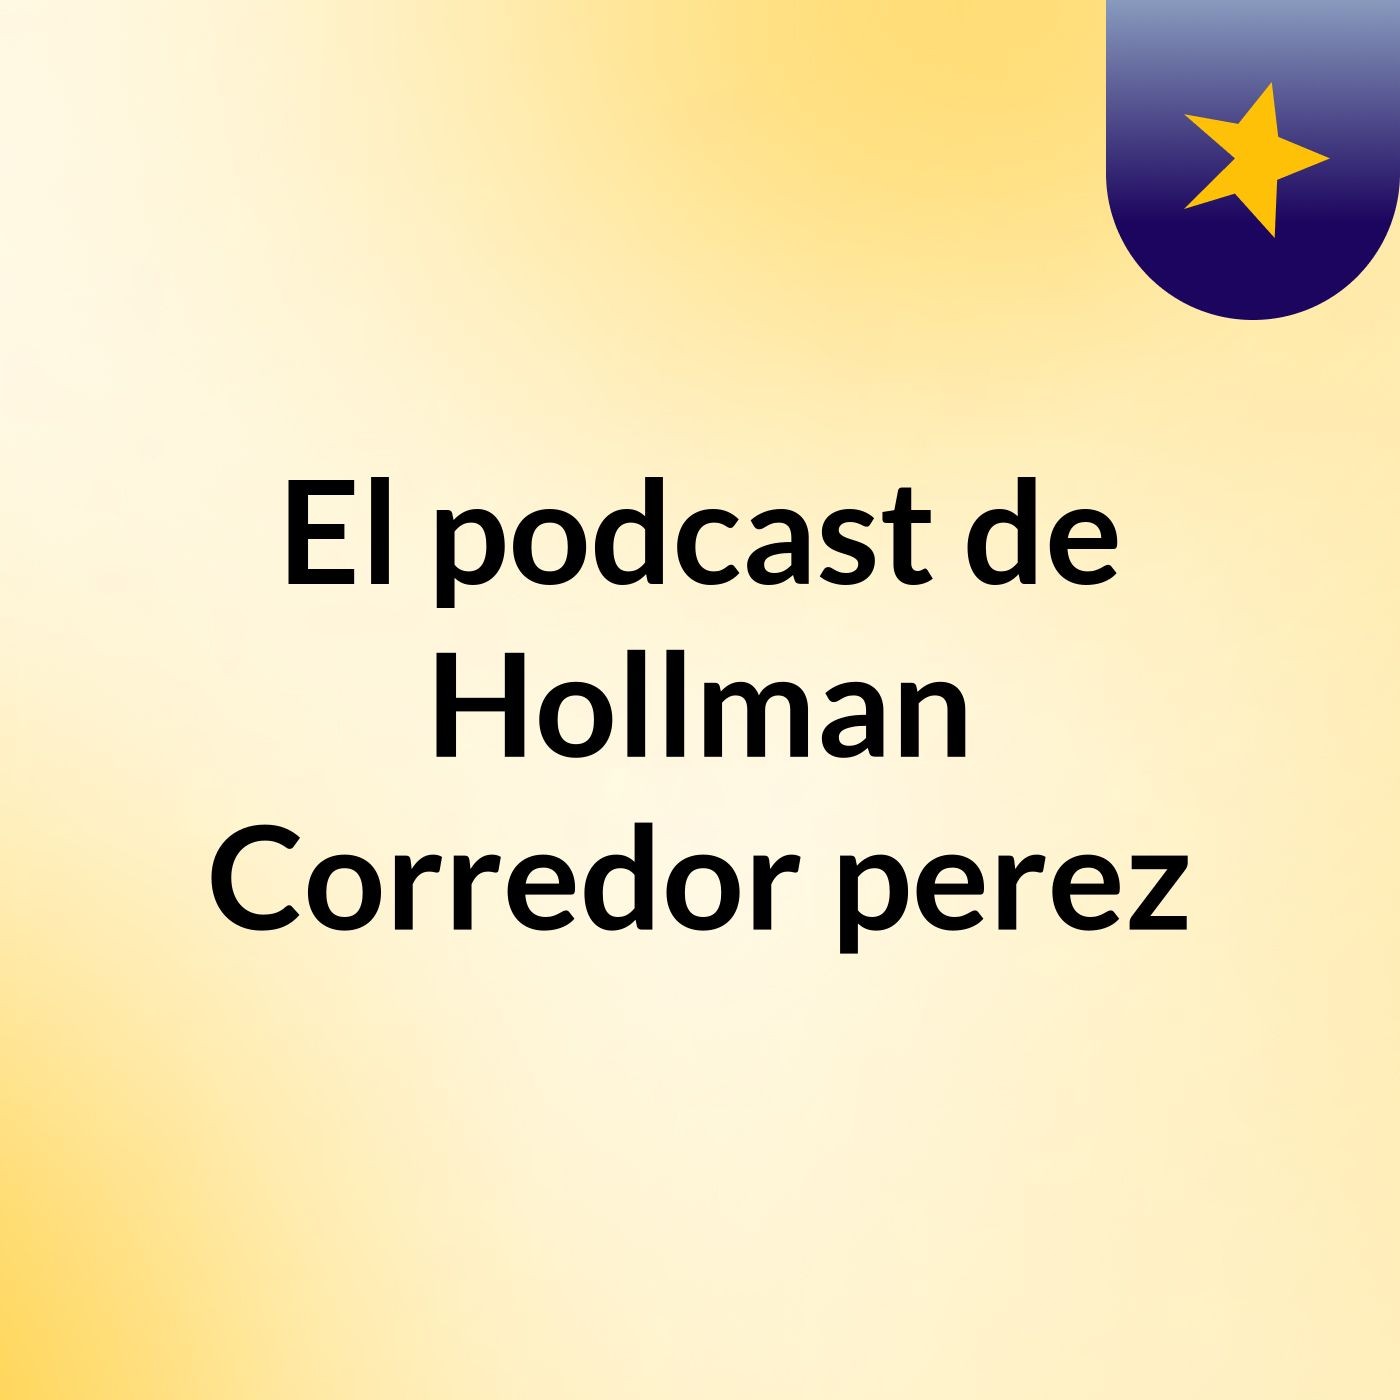 El podcast de Hollman Corredor perez